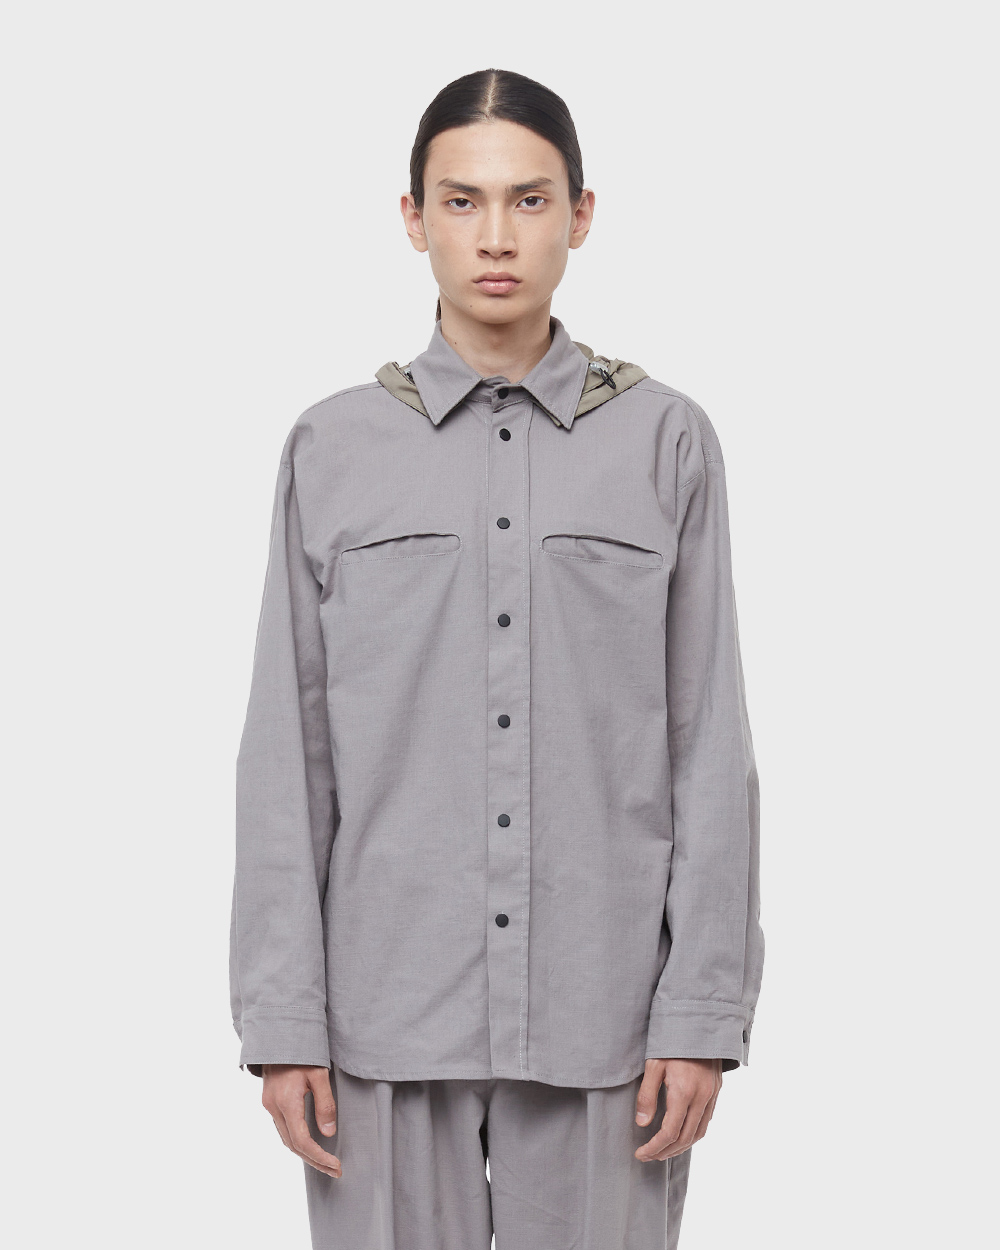 Uniform Jacket (Grey)